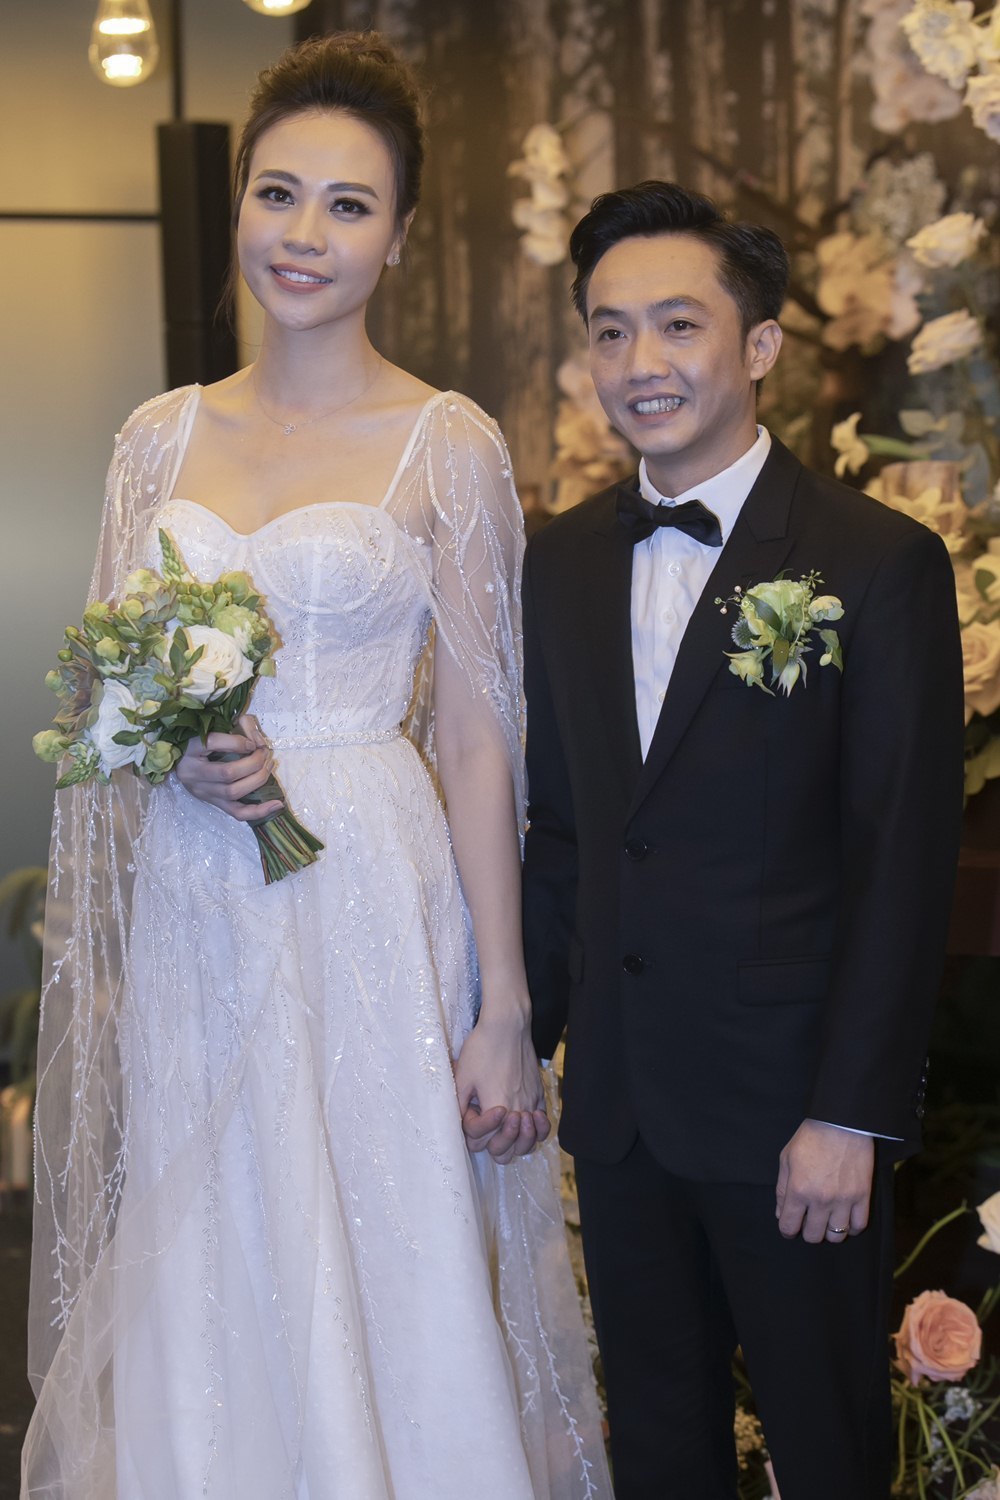 Quy định trong đám cưới người nổi tiếng: Hà Tăng, Minh Hằng yêu cầu gắt, sao quốc tế còn khắt khe hơn - Ảnh 6.